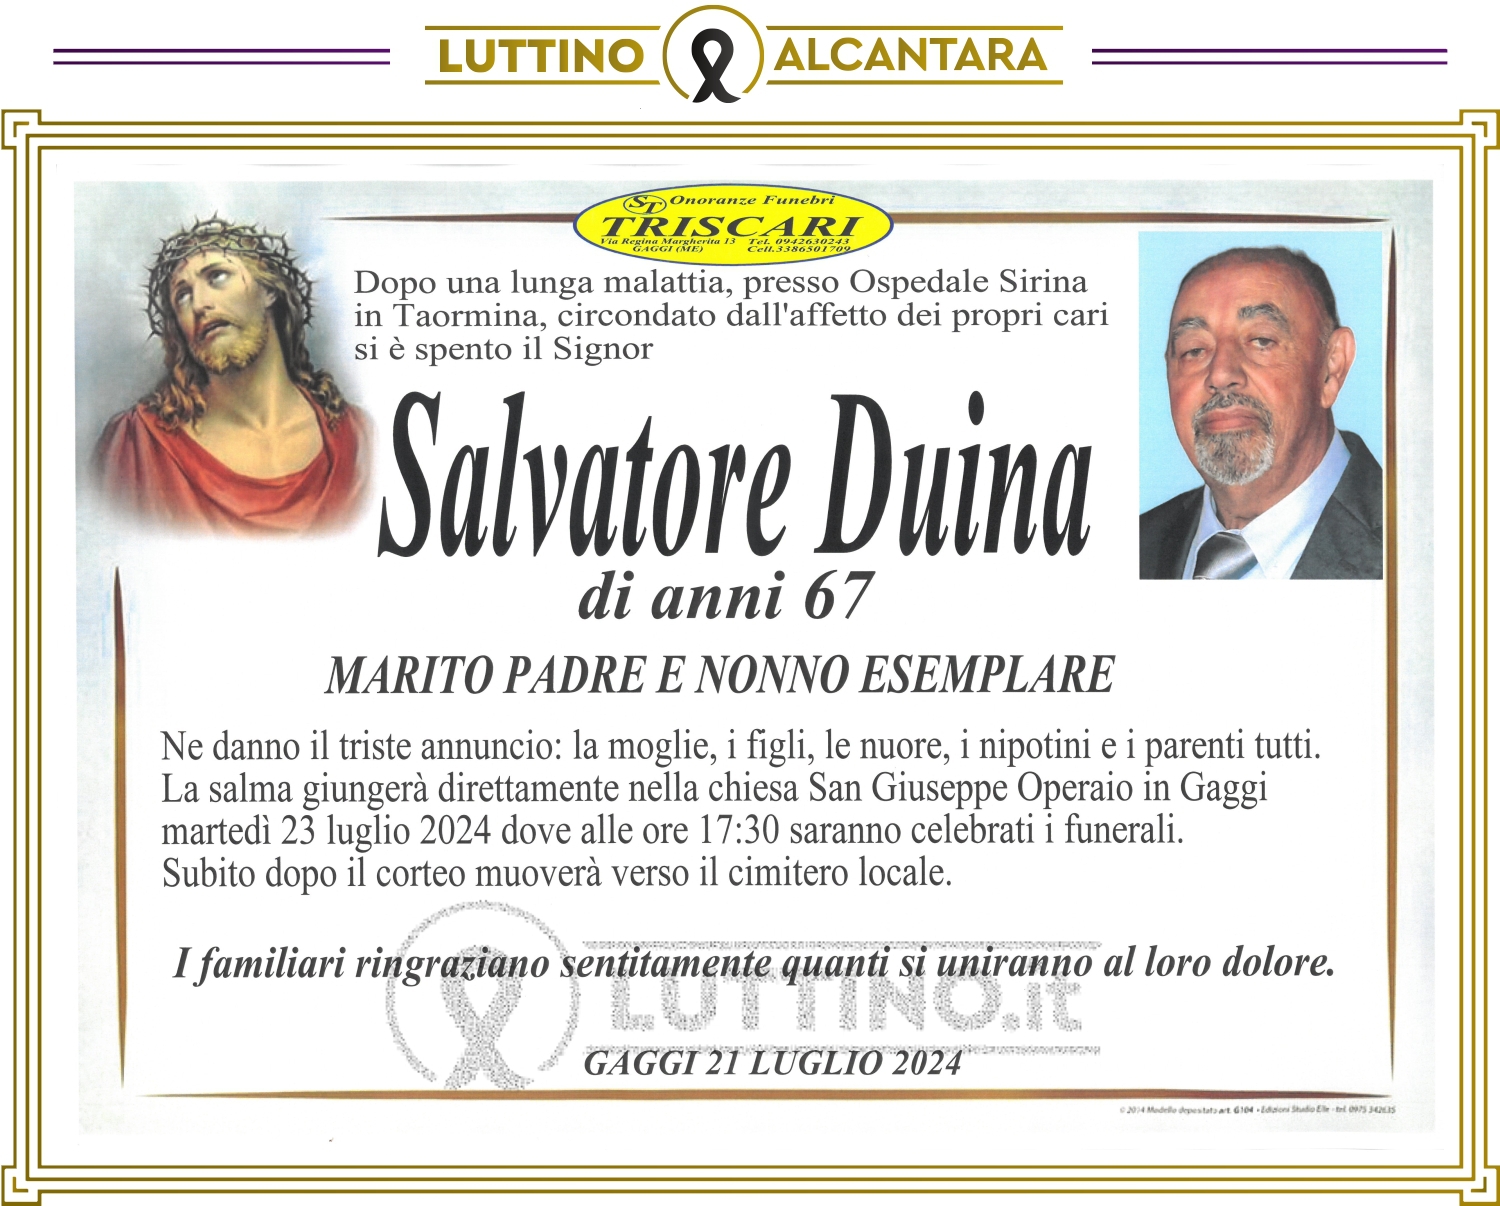 Salvatore Duina